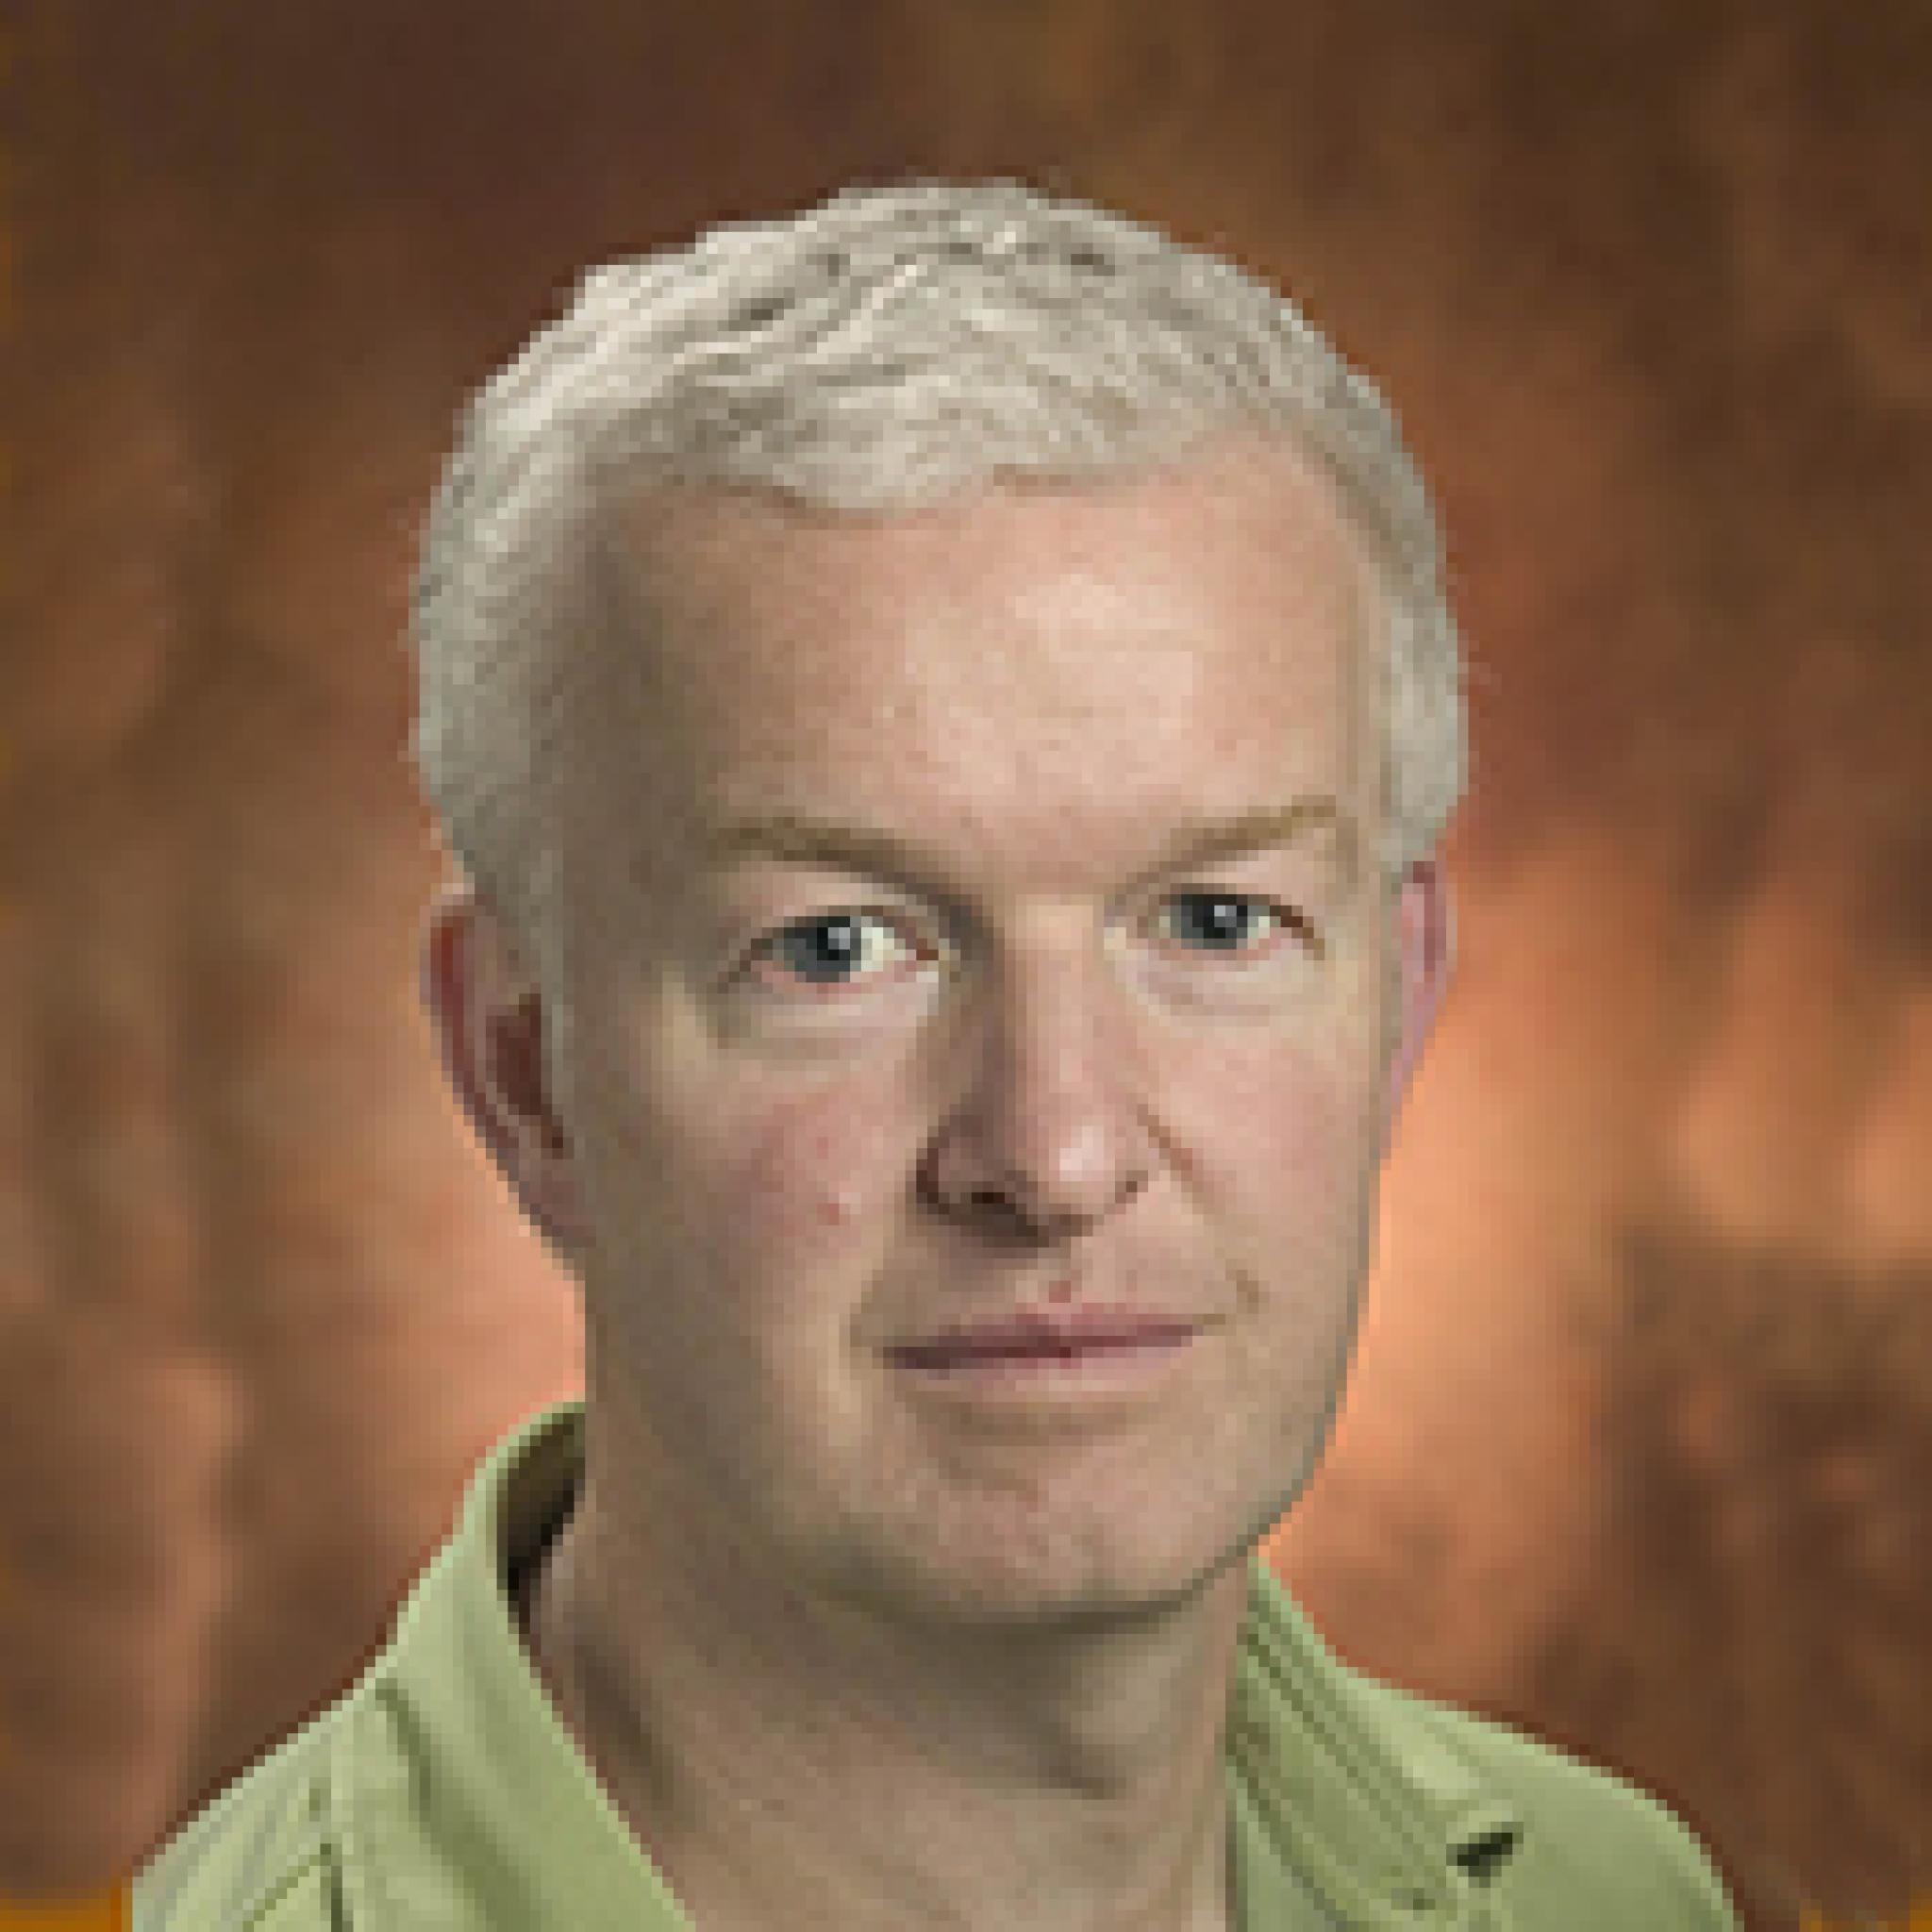 Associate Professor Christopher Ballard